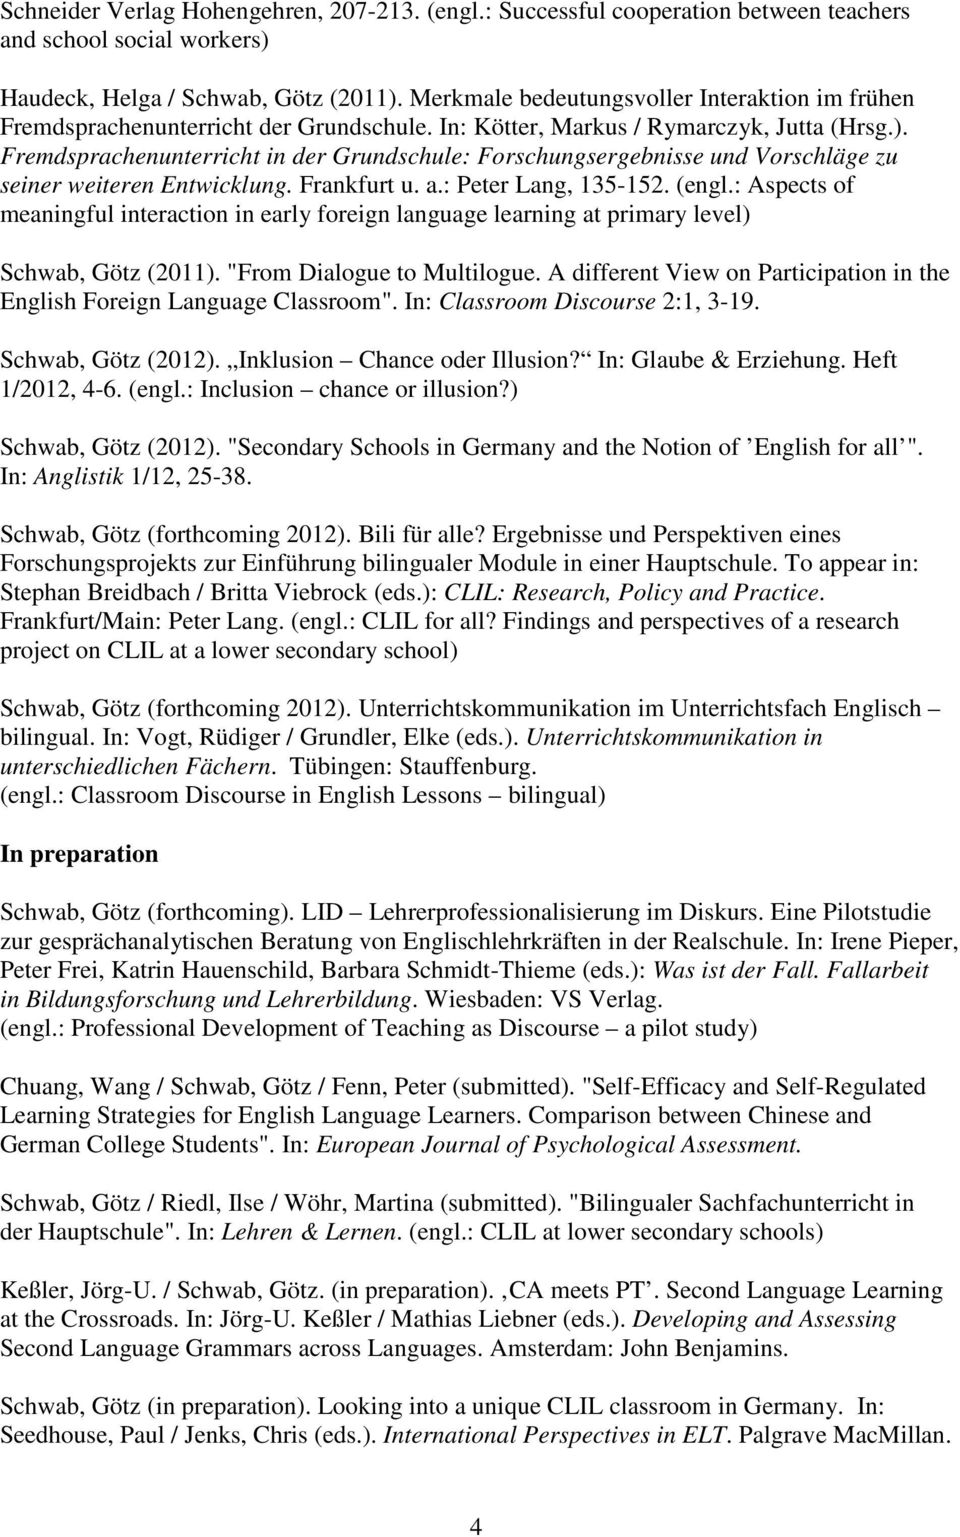 Fremdsprachenunterricht in der Grundschule: Forschungsergebnisse und Vorschläge zu seiner weiteren Entwicklung. Frankfurt u. a.: Peter Lang, 135-152. (engl.